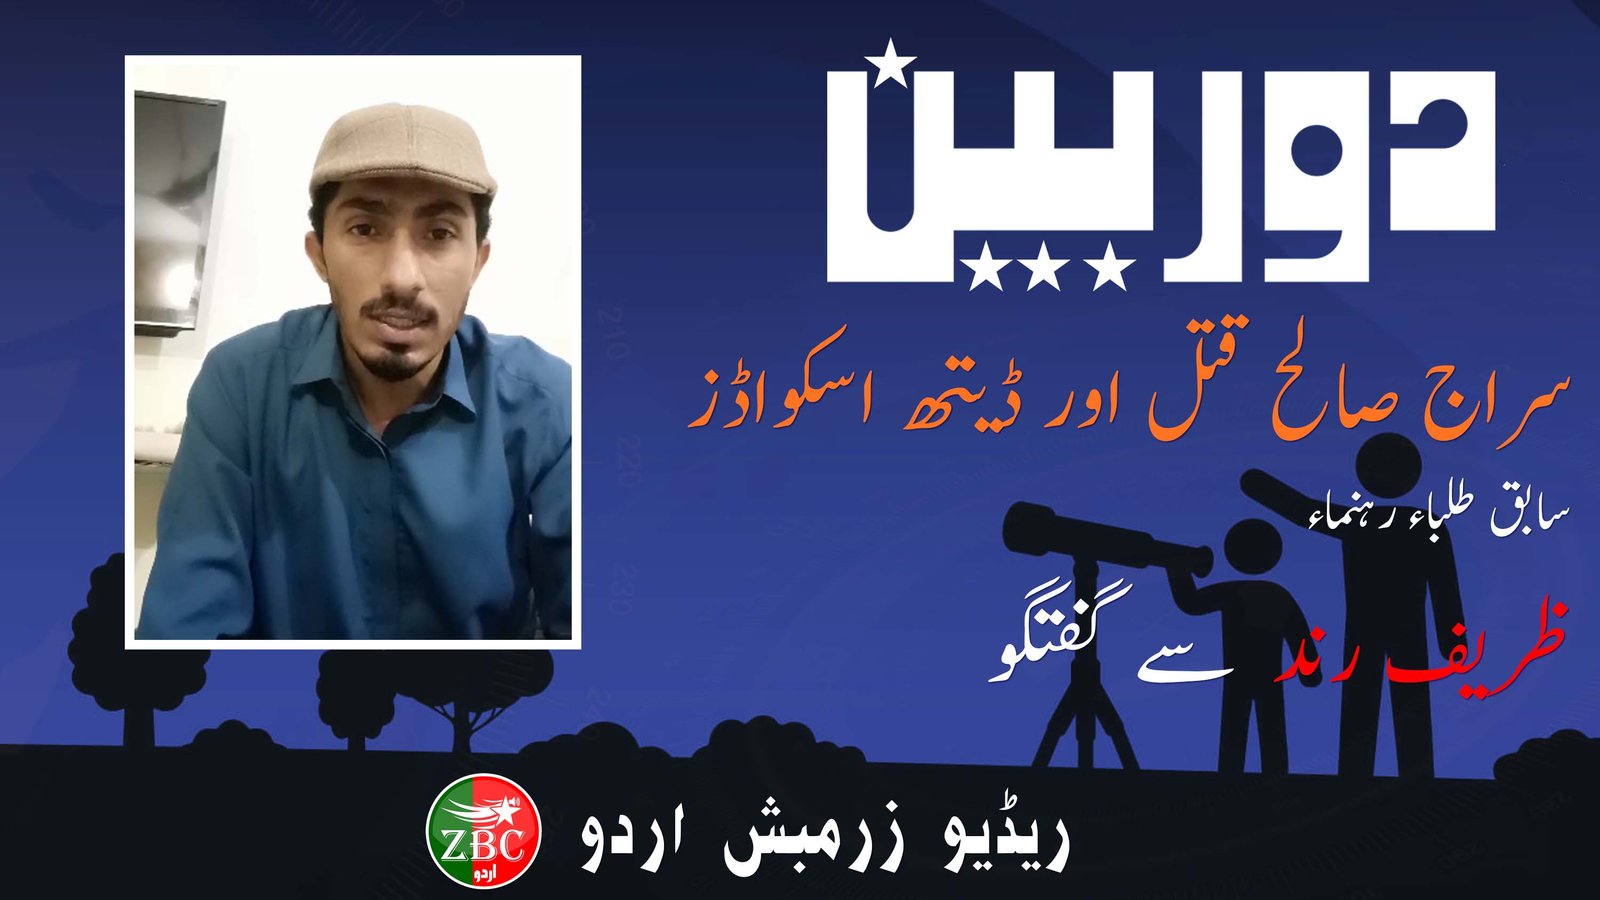 دوربین: شہید سراج صالح کے قتل میں ڈیتھ اسکواڈ کے کردار پر سابق طالب علم رہنماء ظریف رند سے گفتگو | ریڈیو زرمبش اردو 